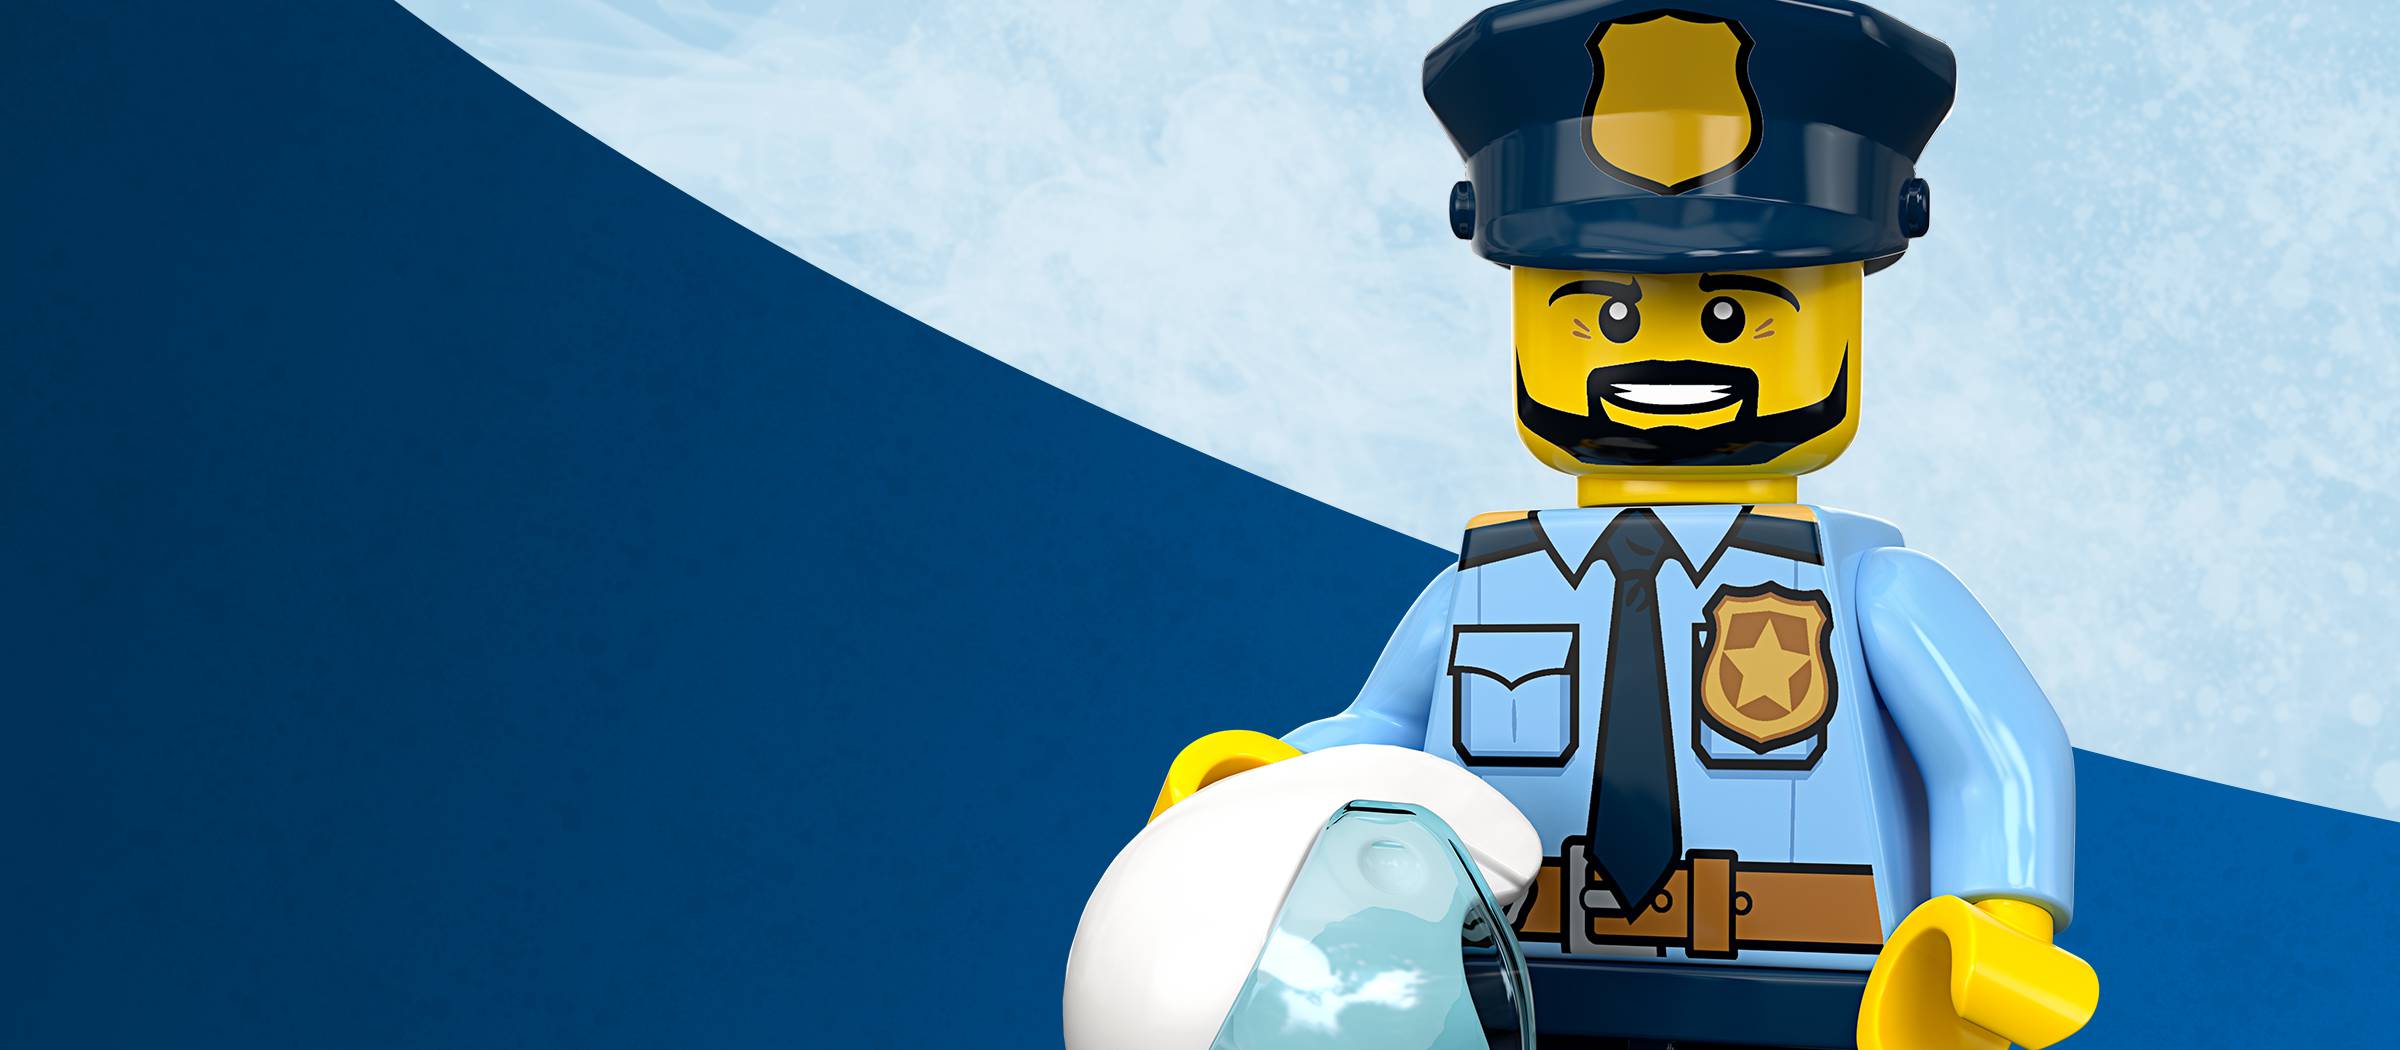 police officer lego set